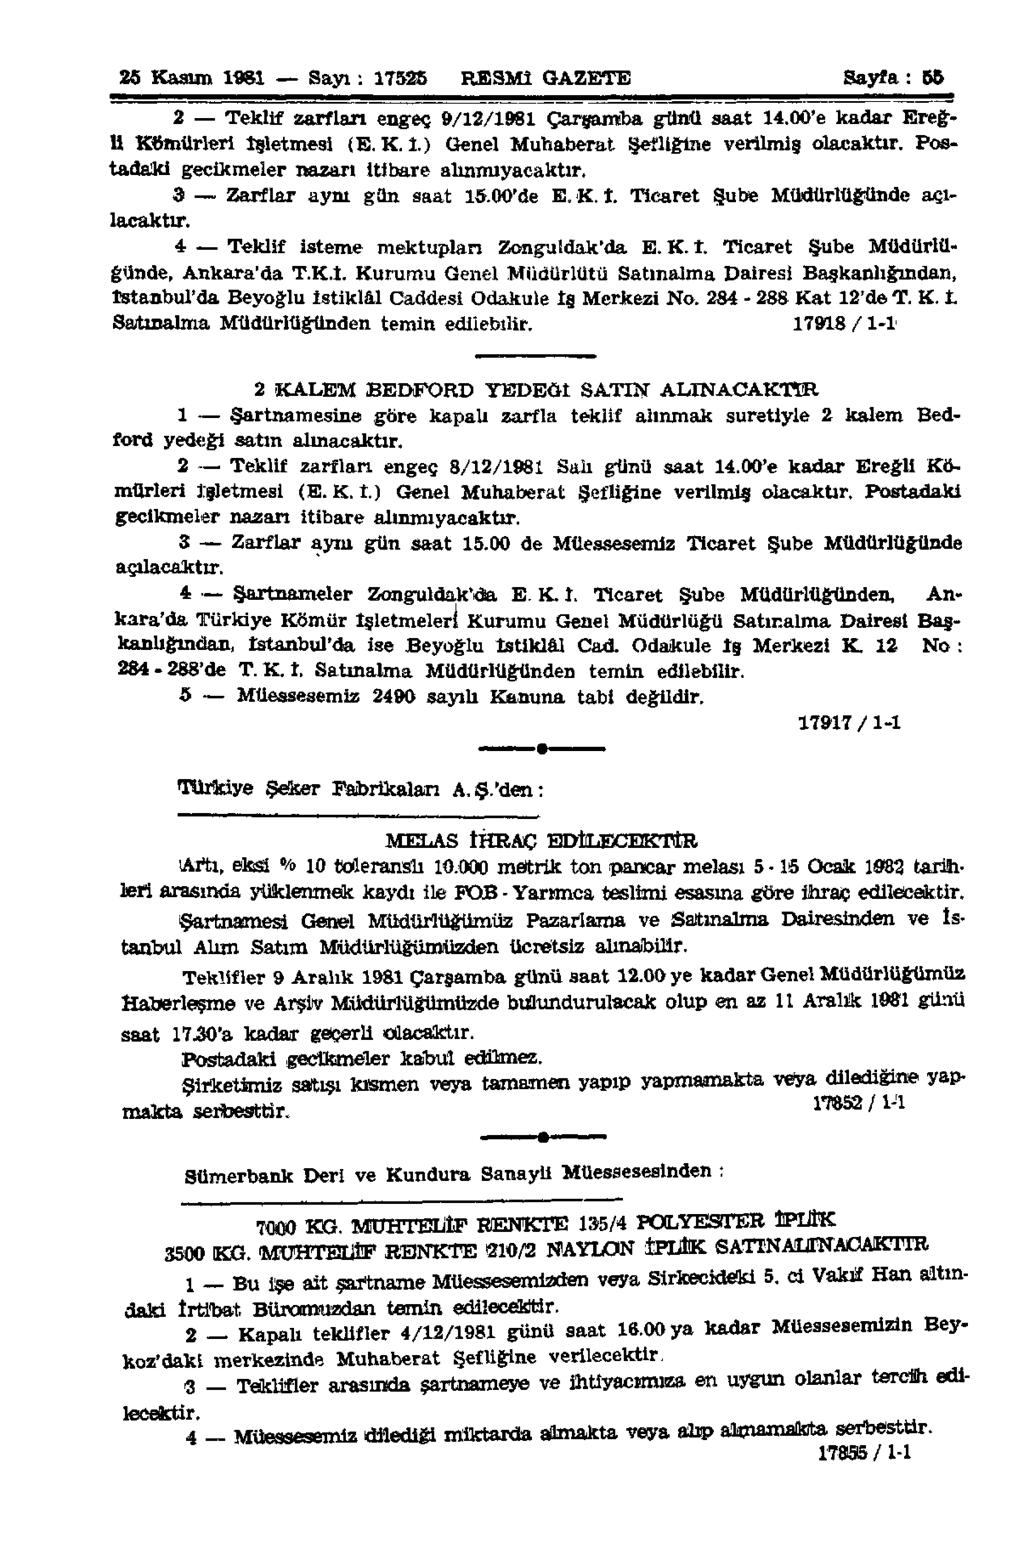 25 Kasım 1981 Sayı : 17525 RESMÎ GAZETE Sayfa: 55 2 Teklif zarfları engeç 9/12/1981 Çarşamba günü saat 14.00'e kadar Ereğli Kömürleri İşletmesi (E.K.l.) Genel Muhaberat Şefliğine verilmiş olacaktır.